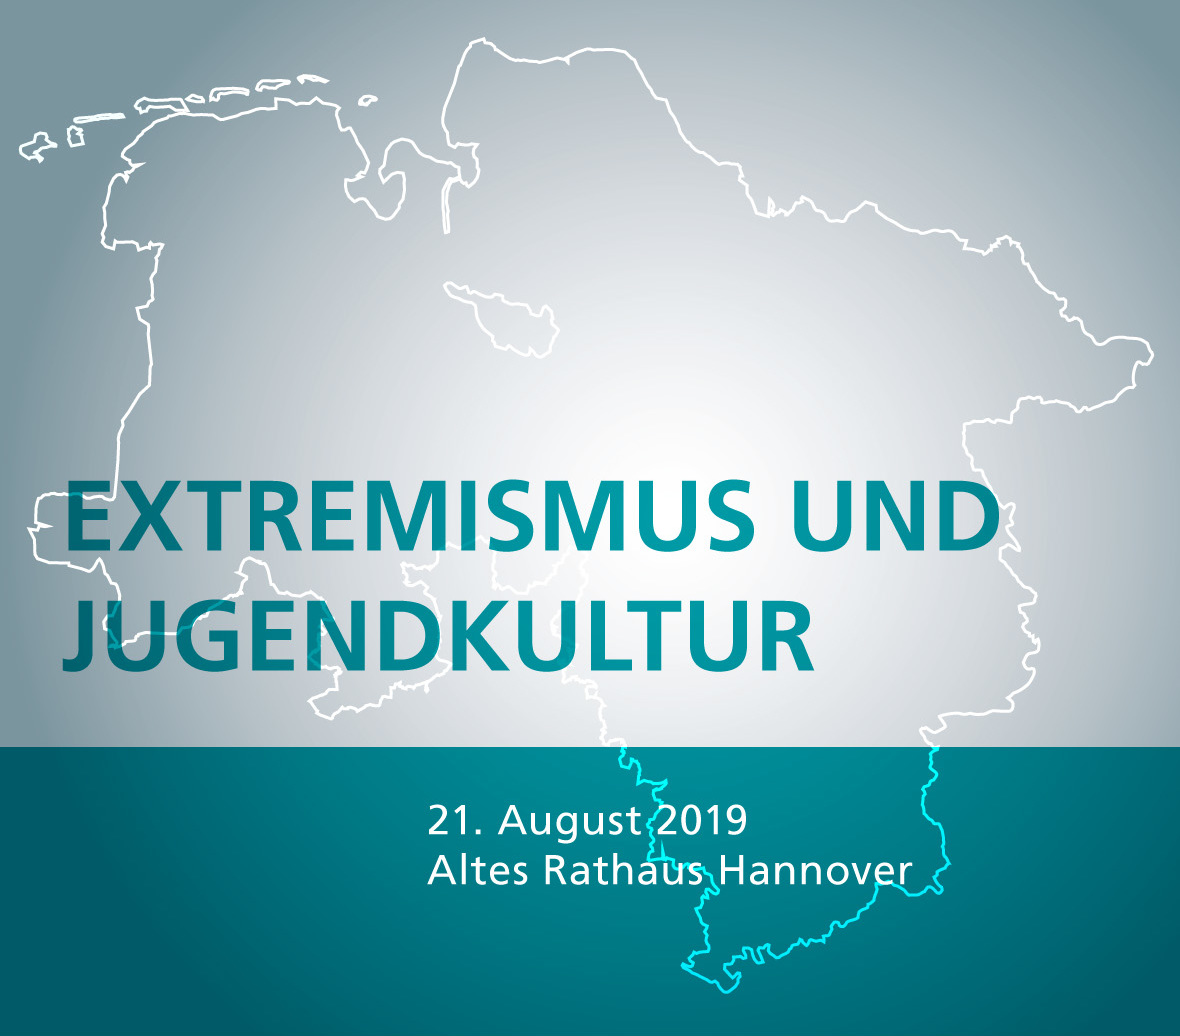 Symposium "Extremismus und Jugendkultur"